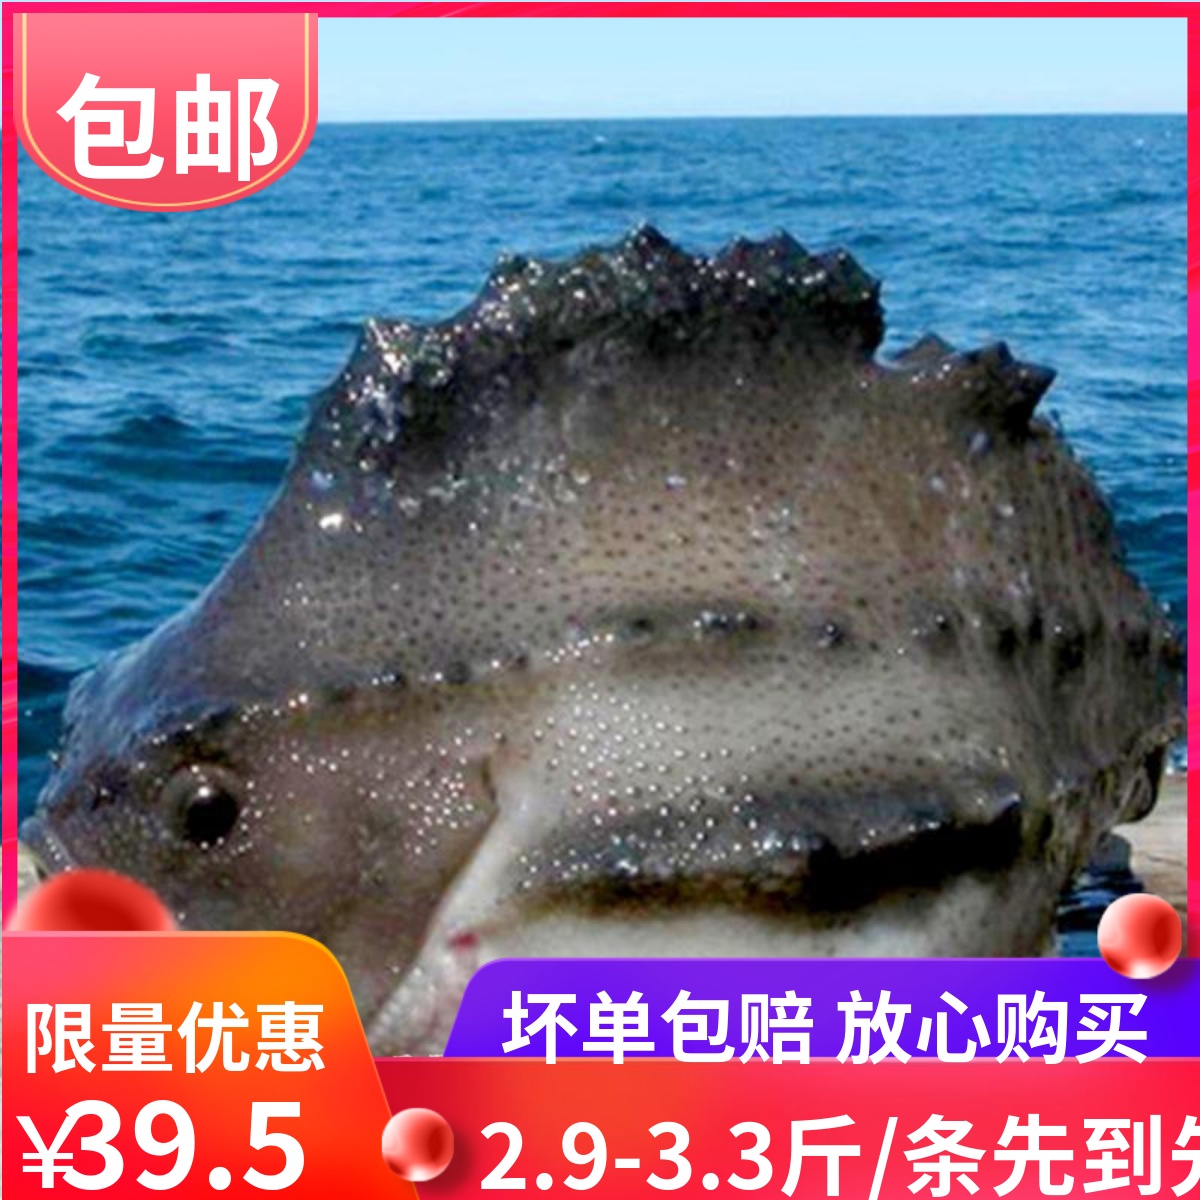 新鲜海参斑鱼2.9-3.3斤左右/条进口冰岛海参斑鱼石斑鱼胶原蛋白鱼